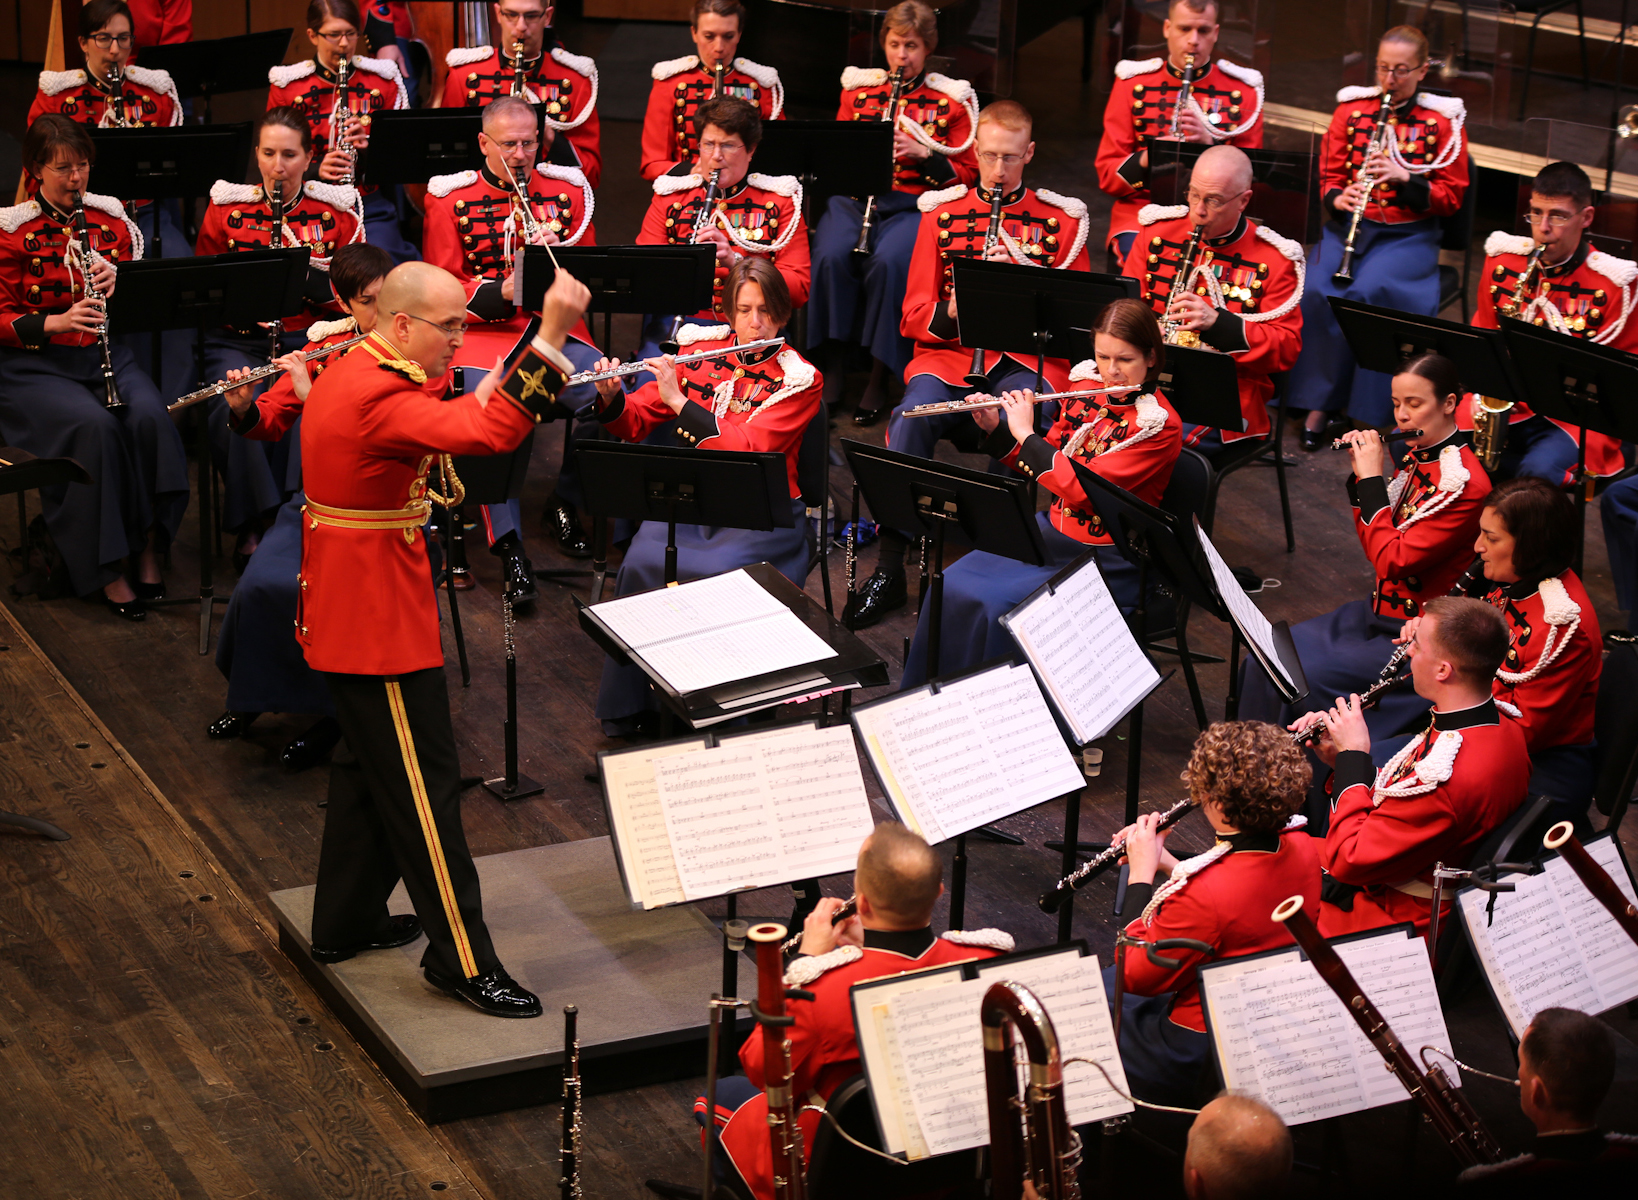 United States Marine Band